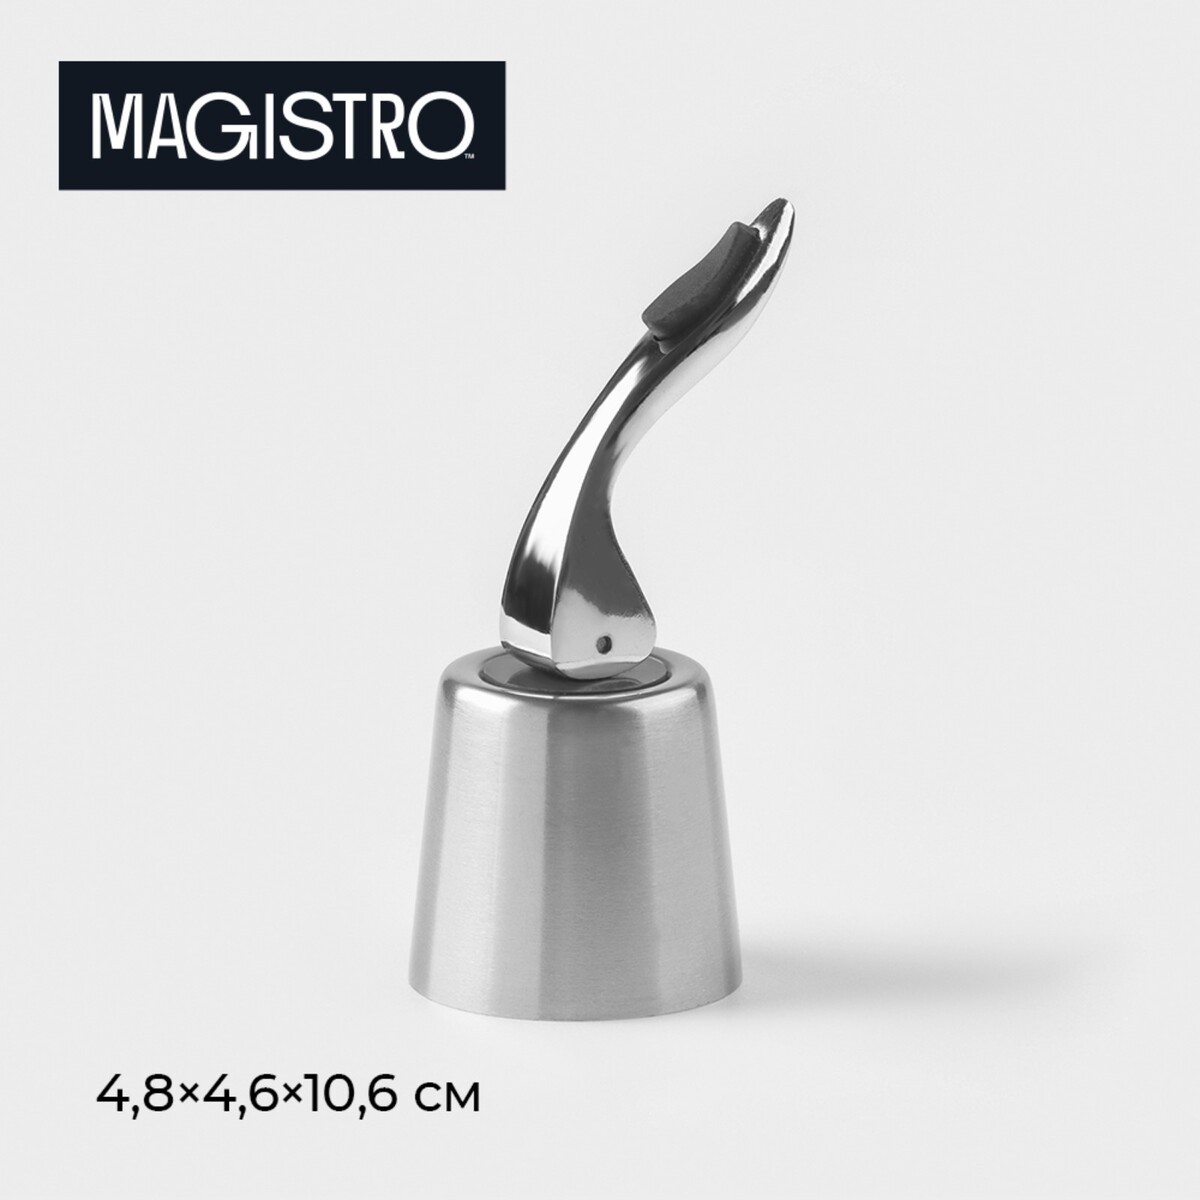 Пробка для вина magistro magnetto, универсальная пробка для вина regent inox vino